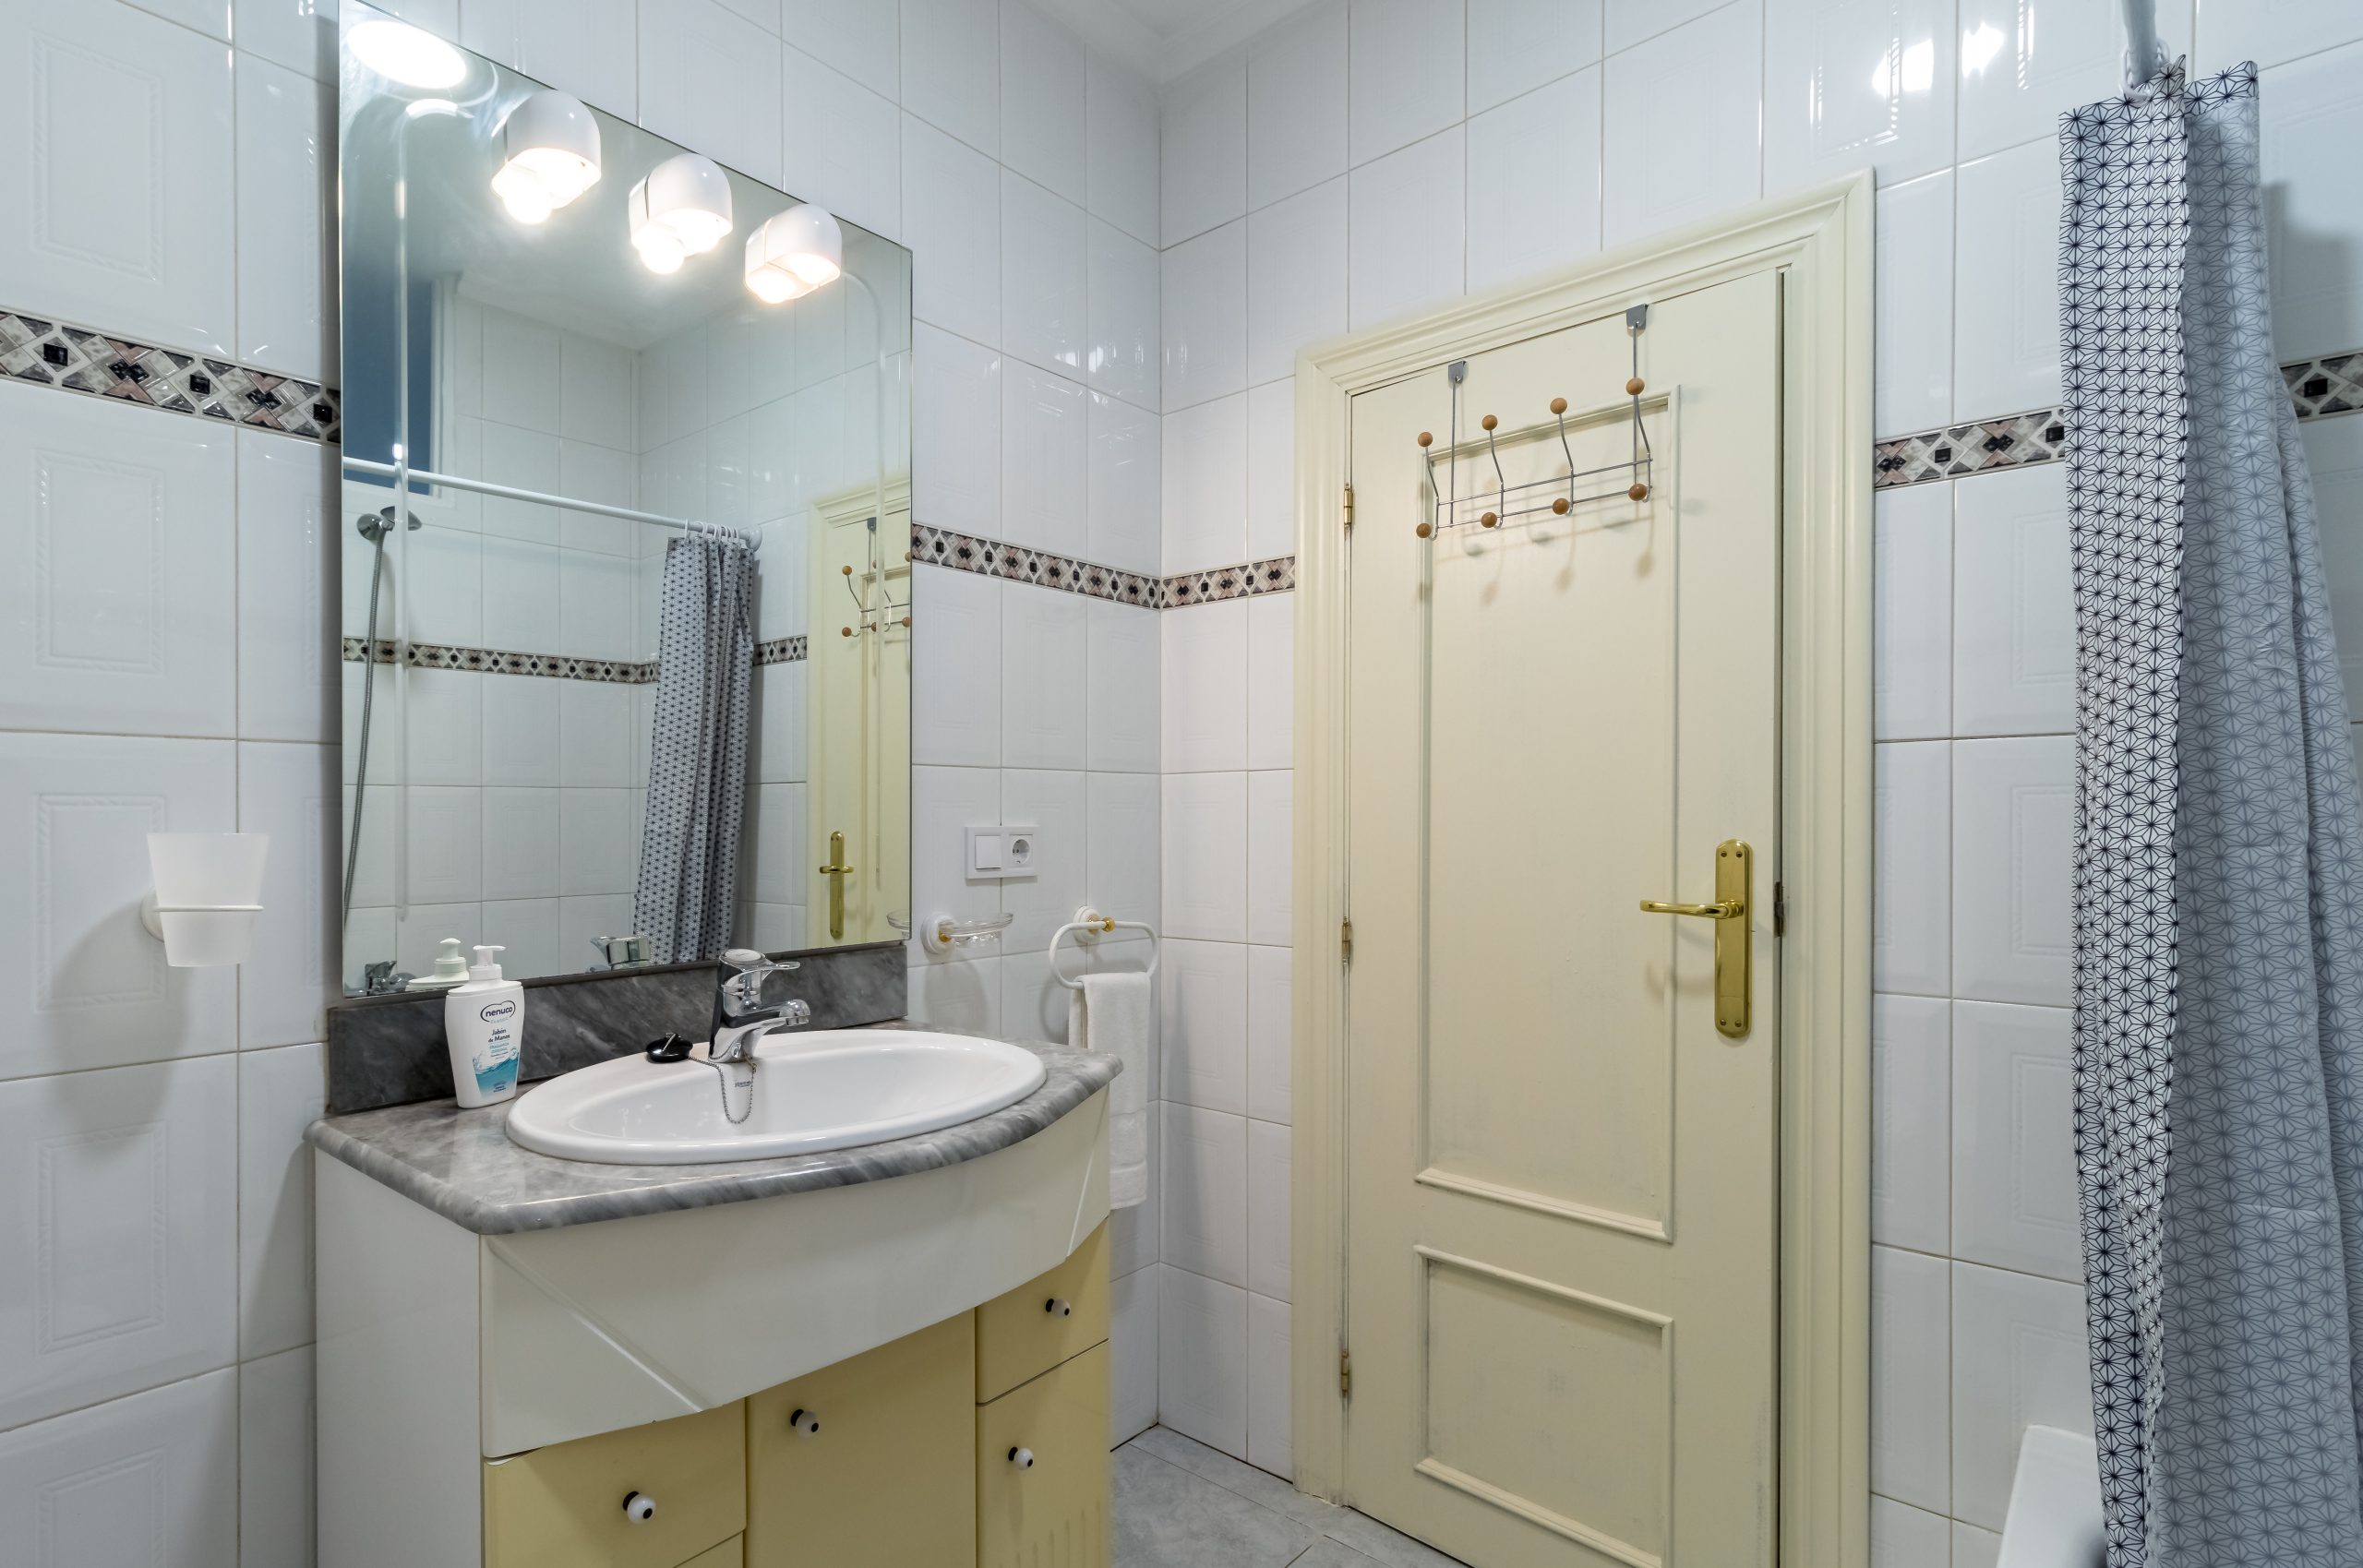 studio for rent in Santander -bathroom